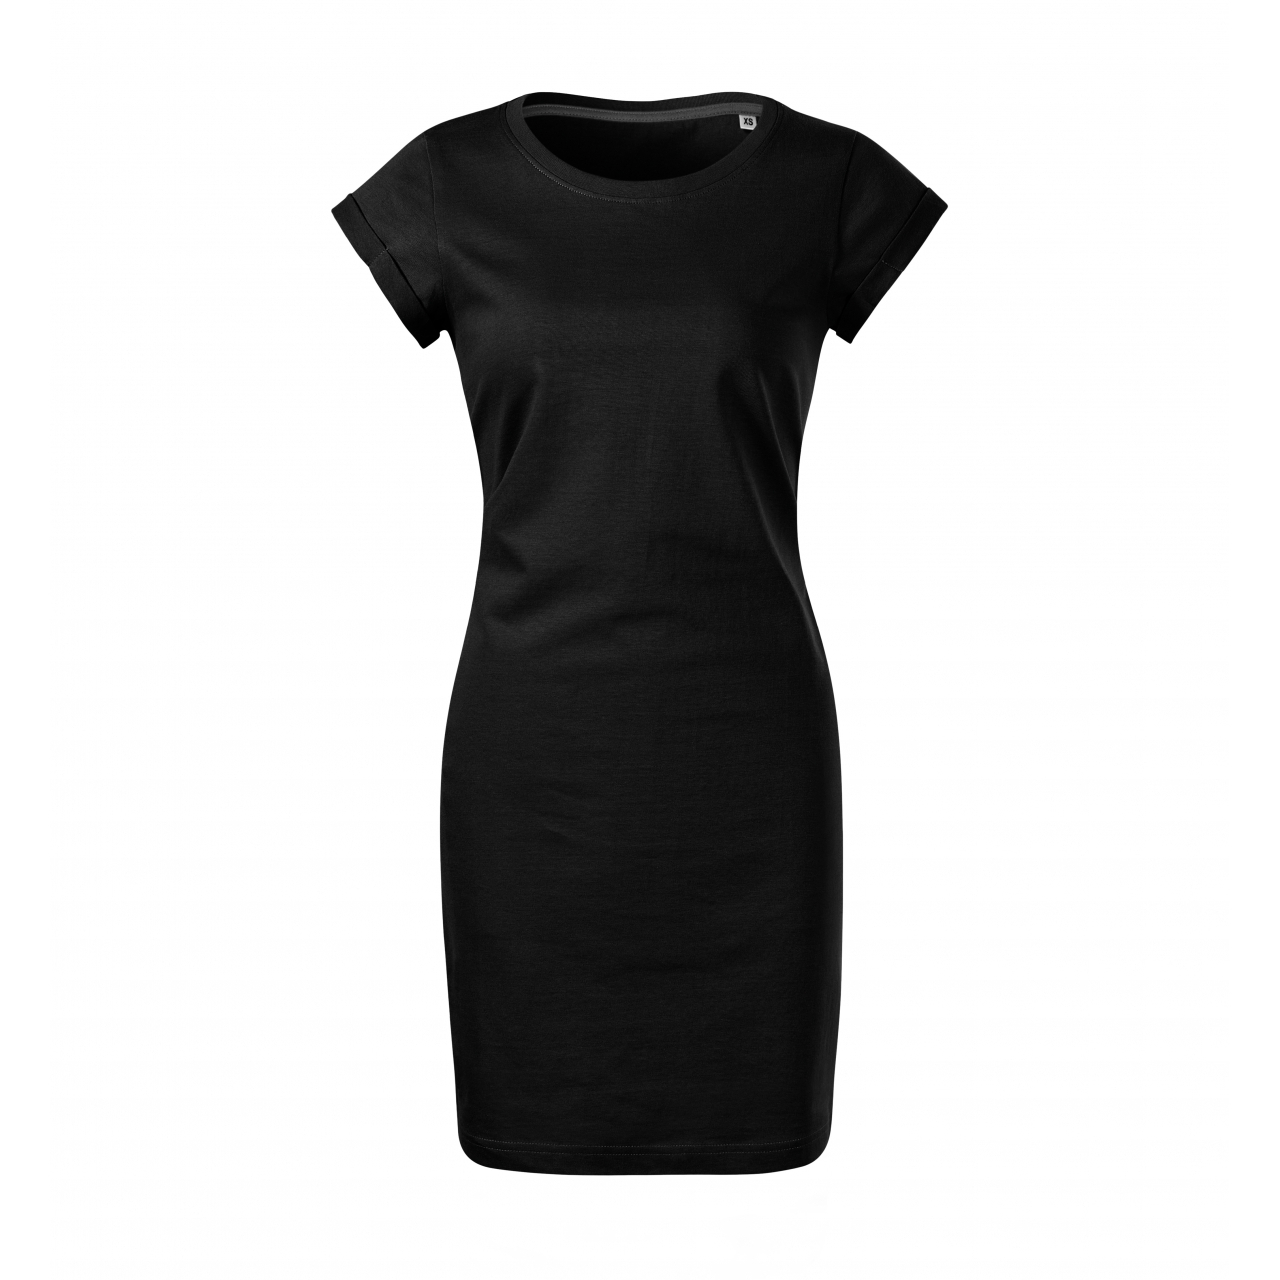 Šaty dámské Malfini Freedom - černé, S